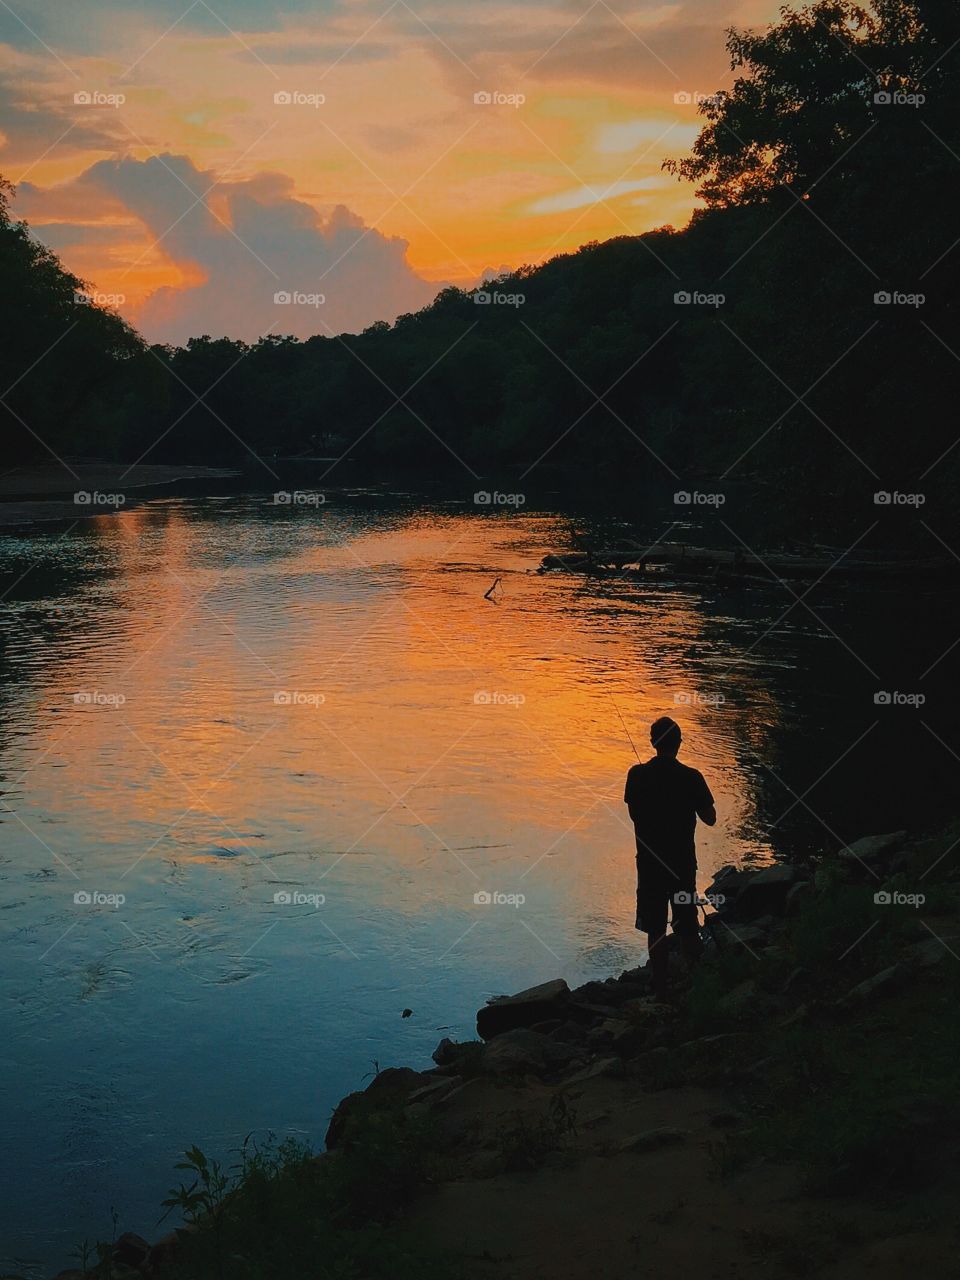 A man by a river